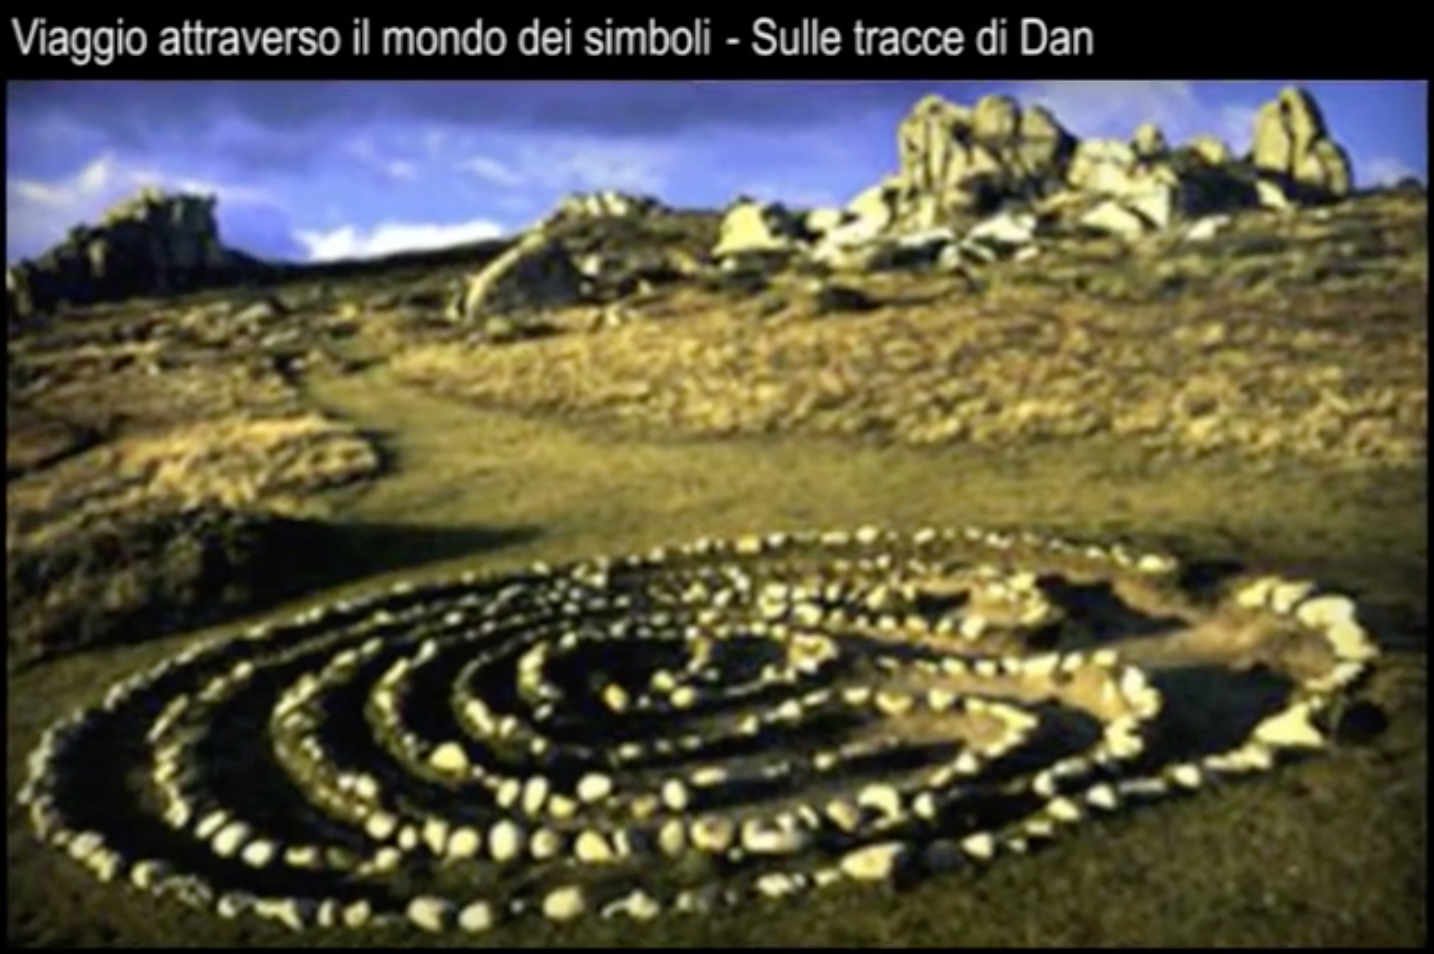 Sulle tracce di Dan - I simboli - Il labirinto - aurorachiara.com